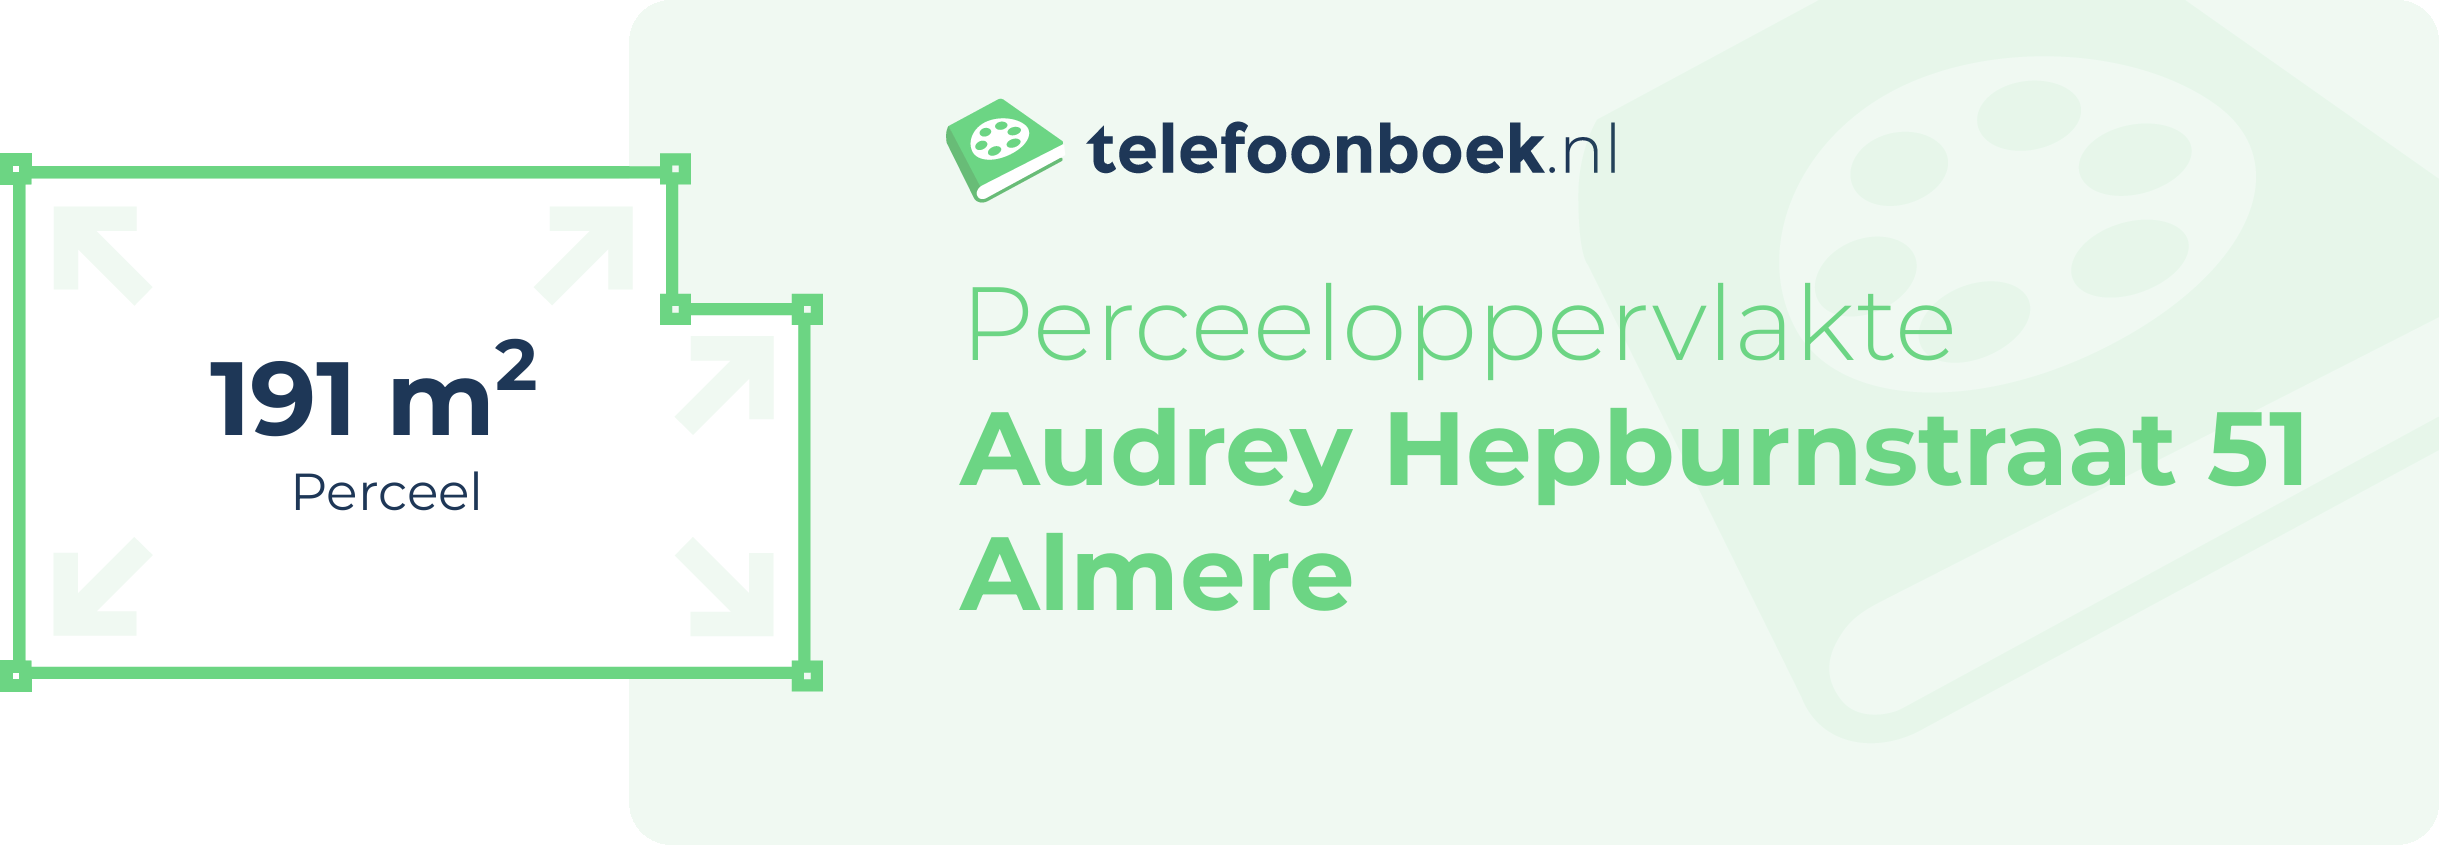 Perceeloppervlakte Audrey Hepburnstraat 51 Almere